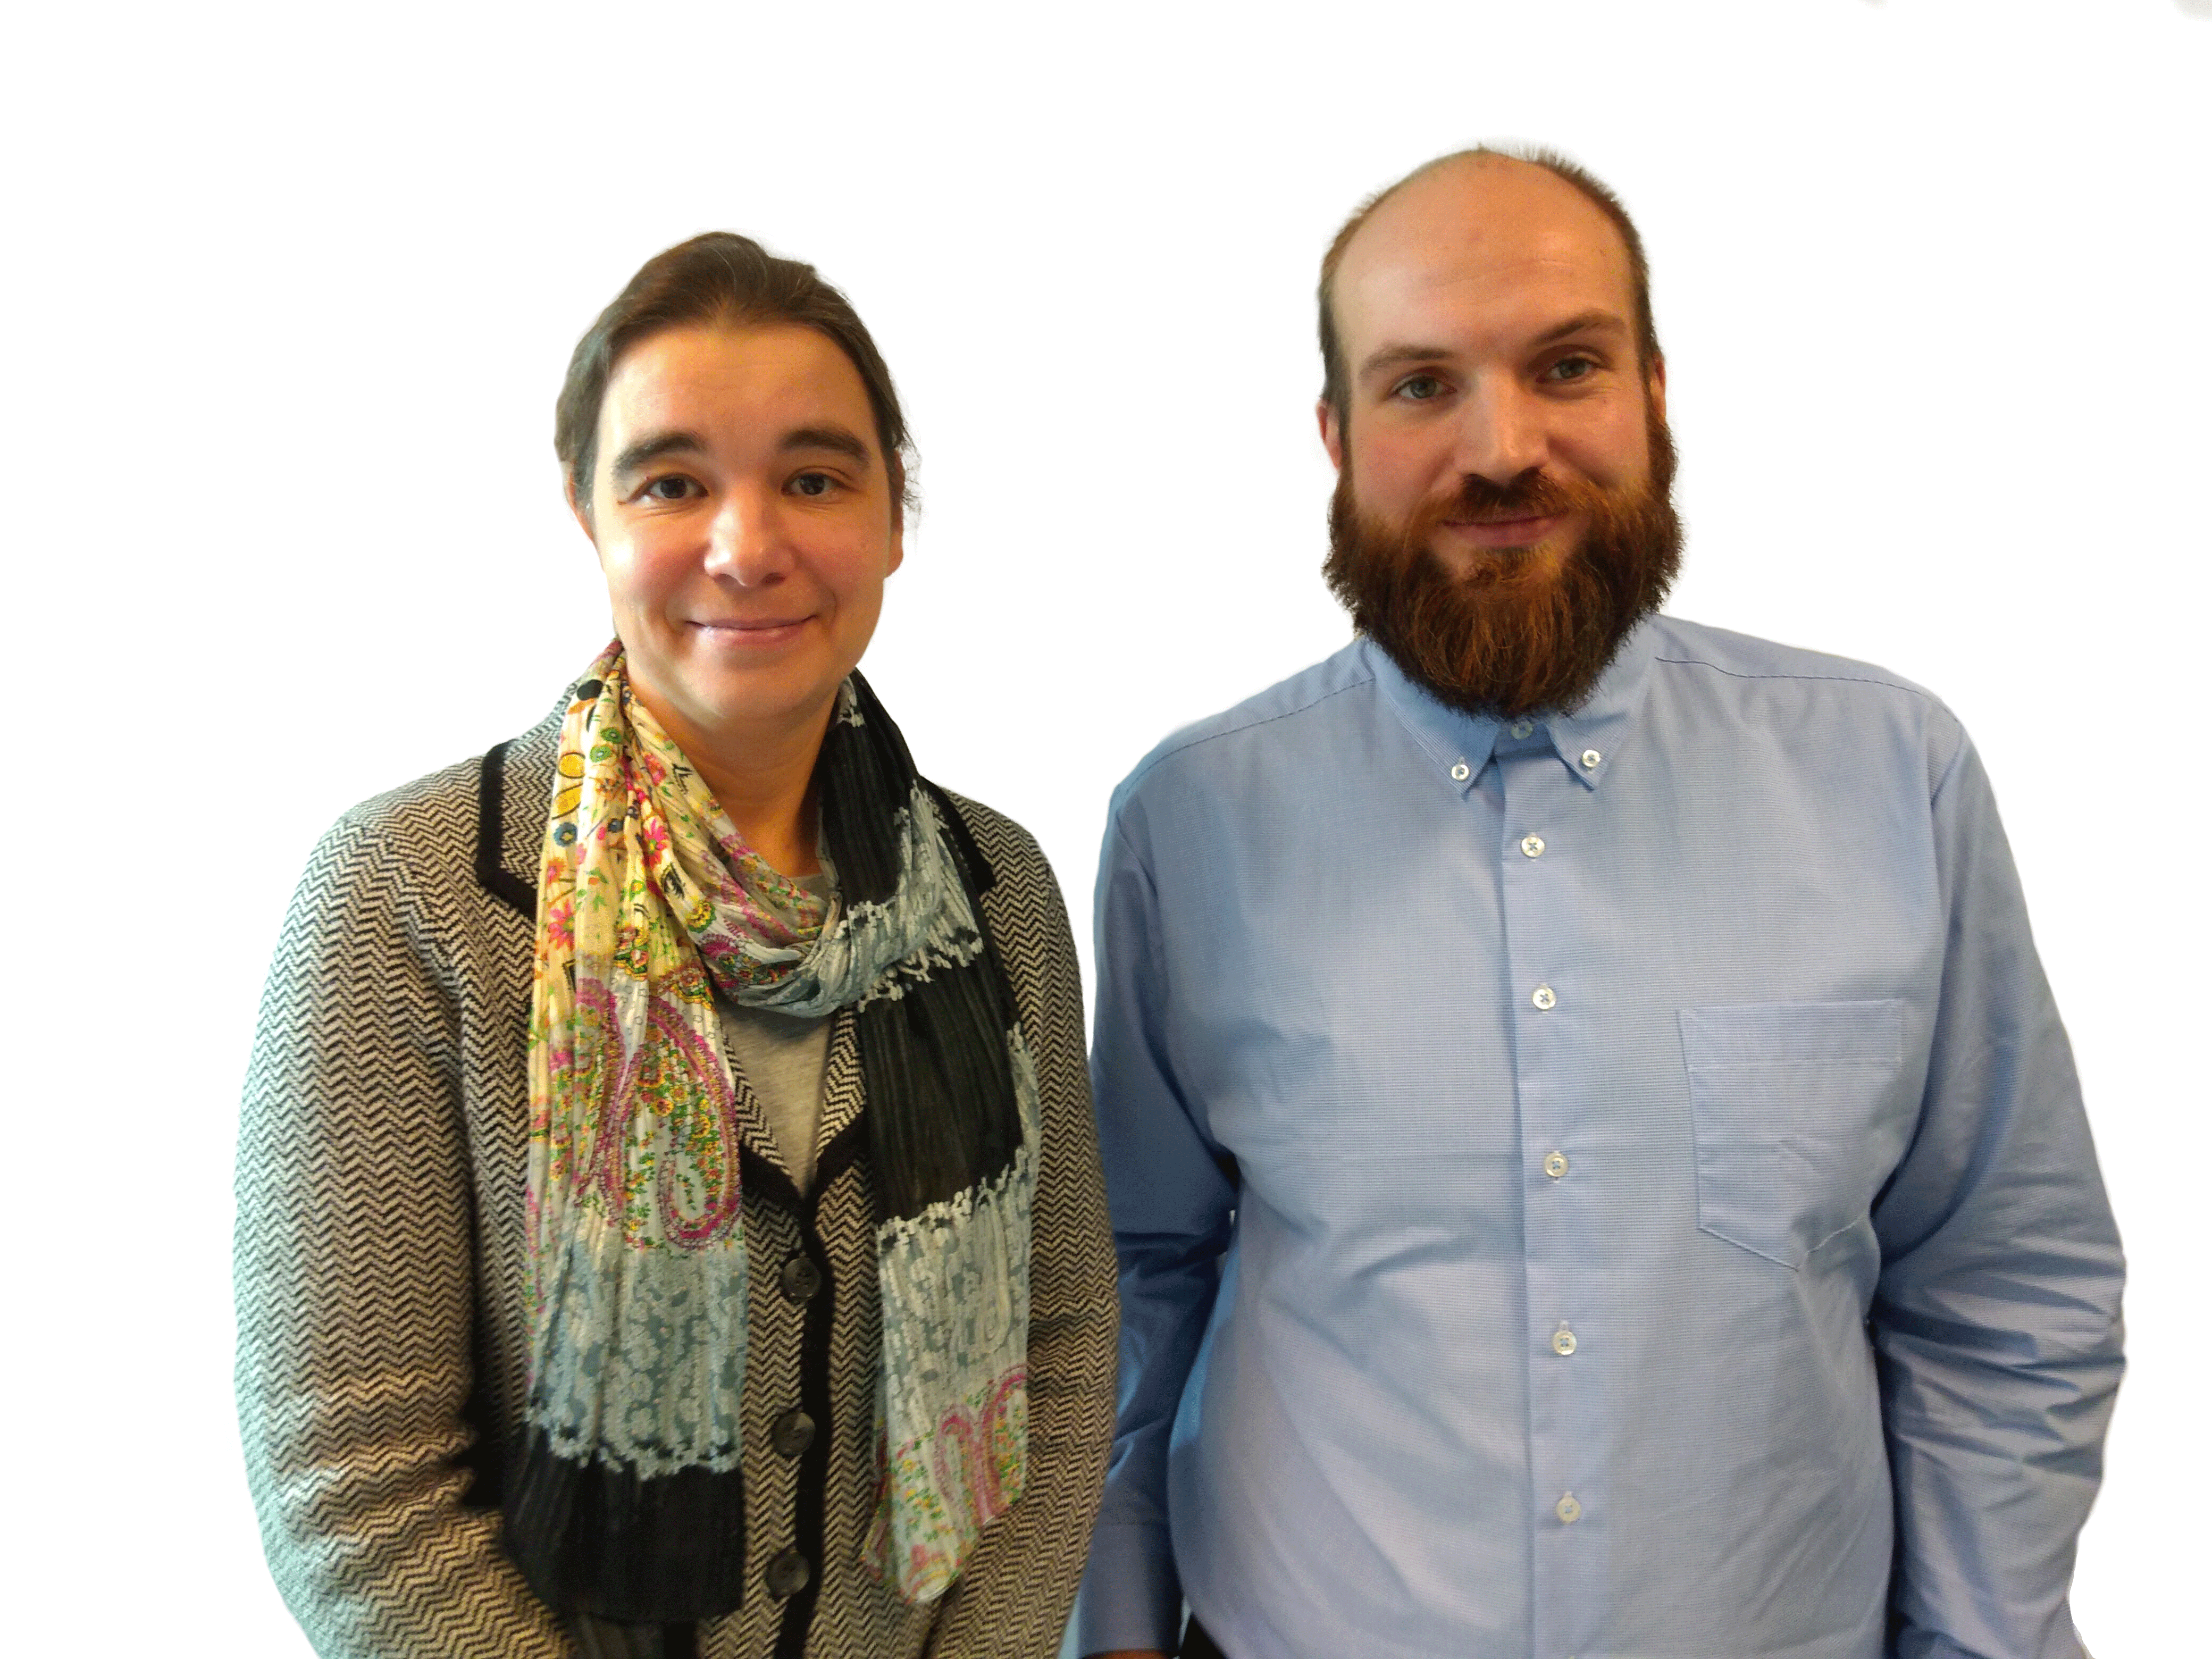 Olga Prieb und Nils Döring vom ZaQ – Zentrum für akademische Qualitätssicherung und -entwicklung der HWR Berlin. Foto: HWR Berlin